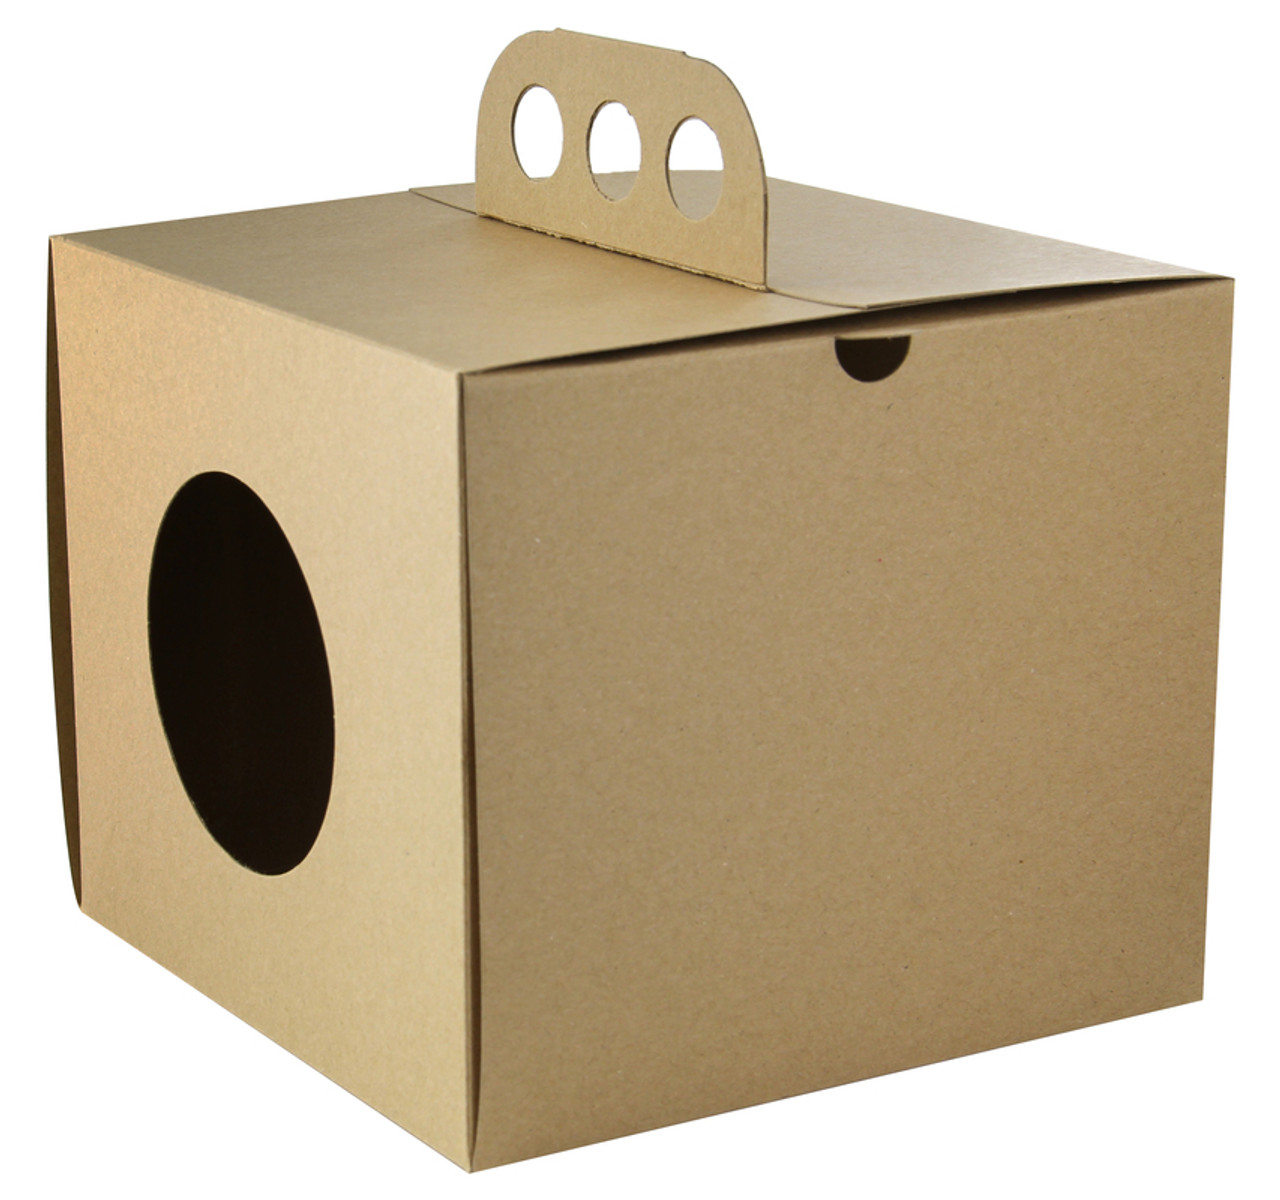 Brass knuckle box - 6.9 x 6.9 x 5.9